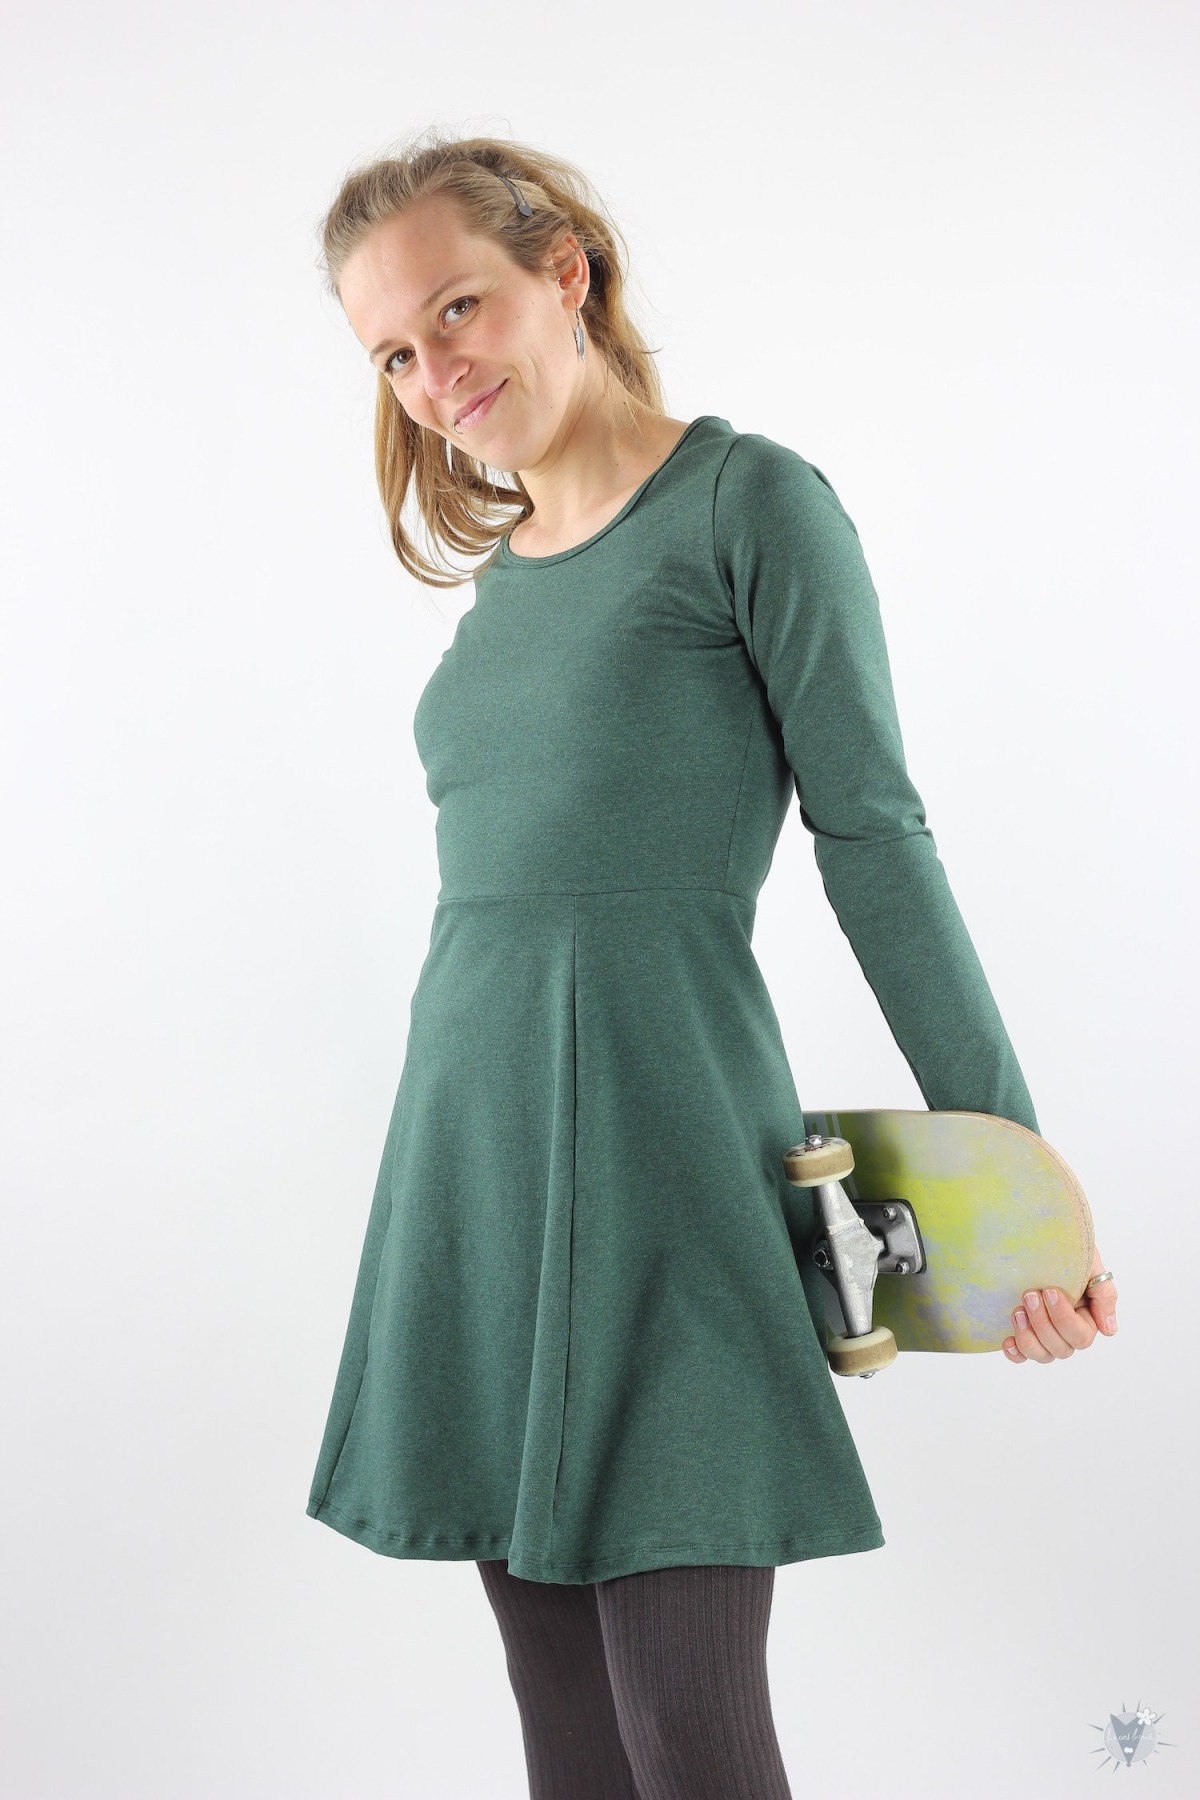 Skaterkleid mit langen Ärmeln, dunkelgrün meliert, elegantes Sommerkleid aus Öko-Jersey 5